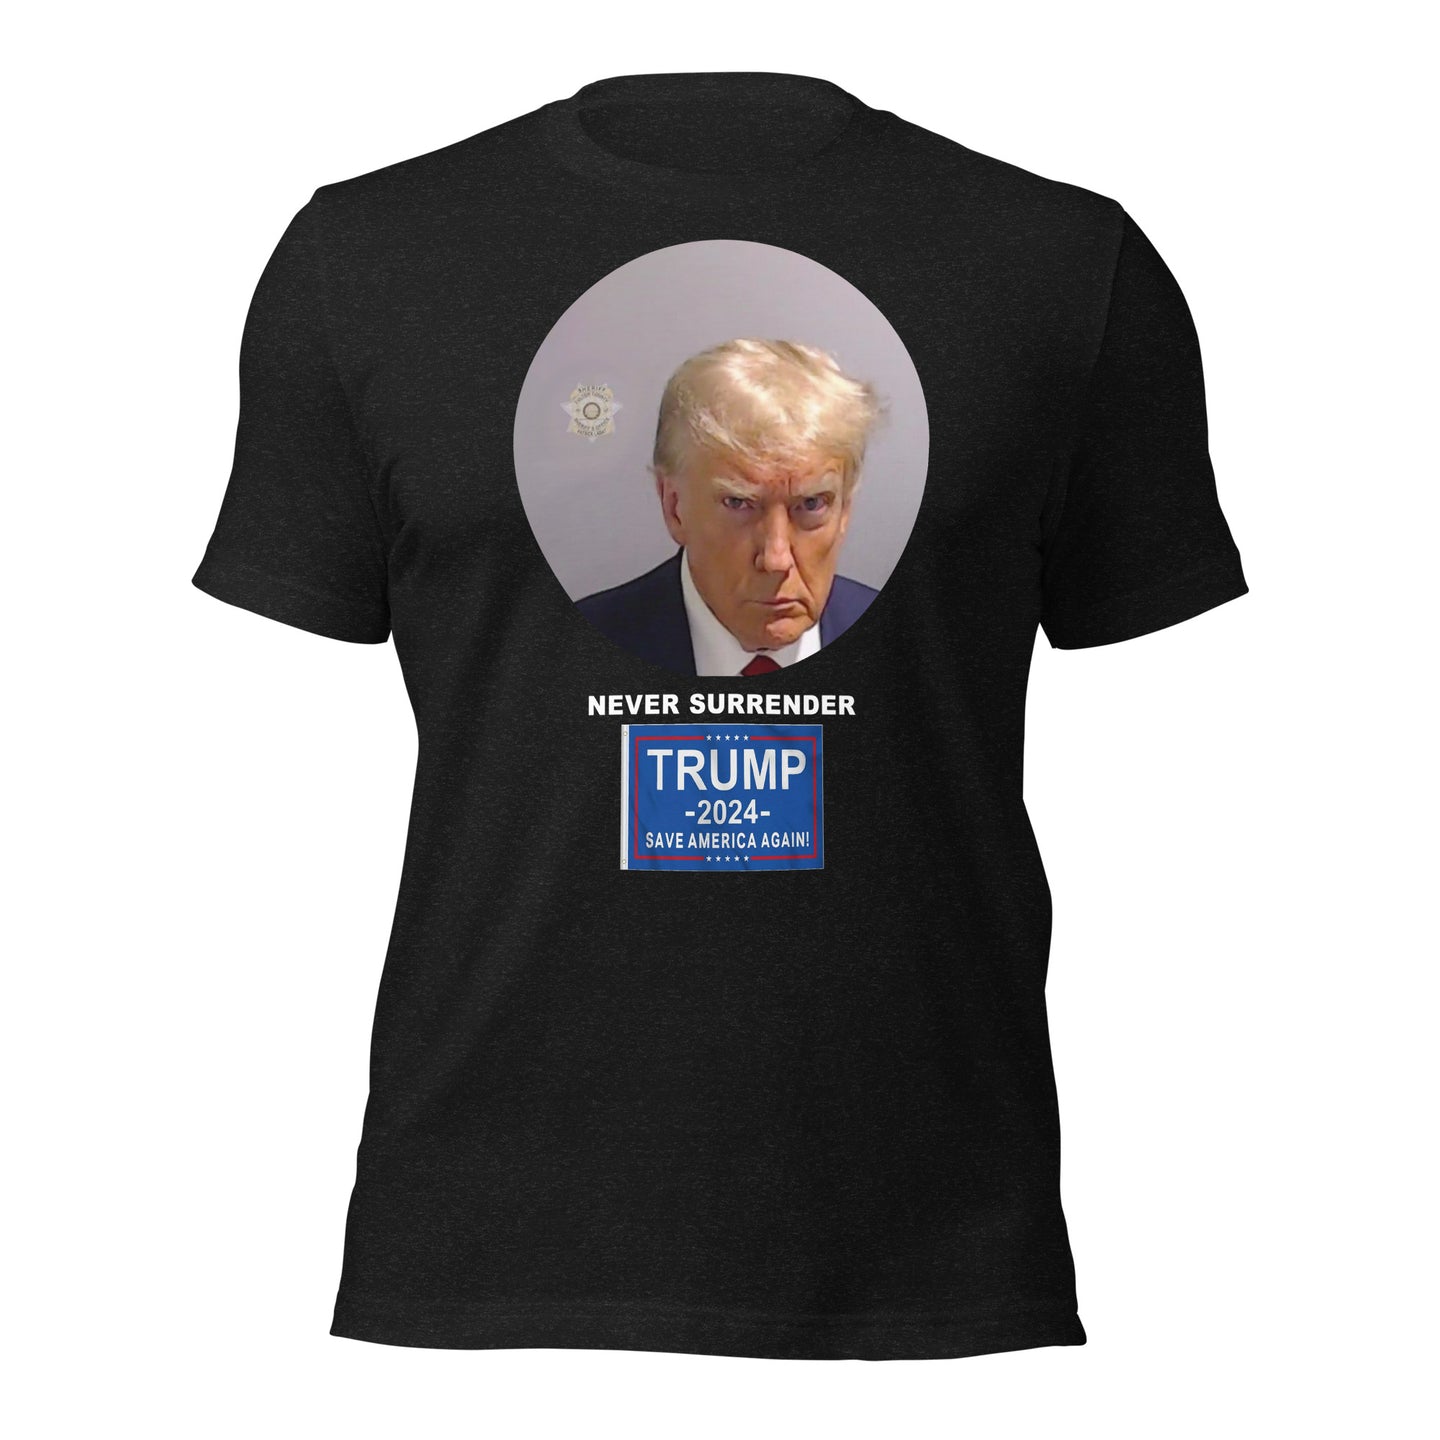 特朗普永不投降照片 T 恤